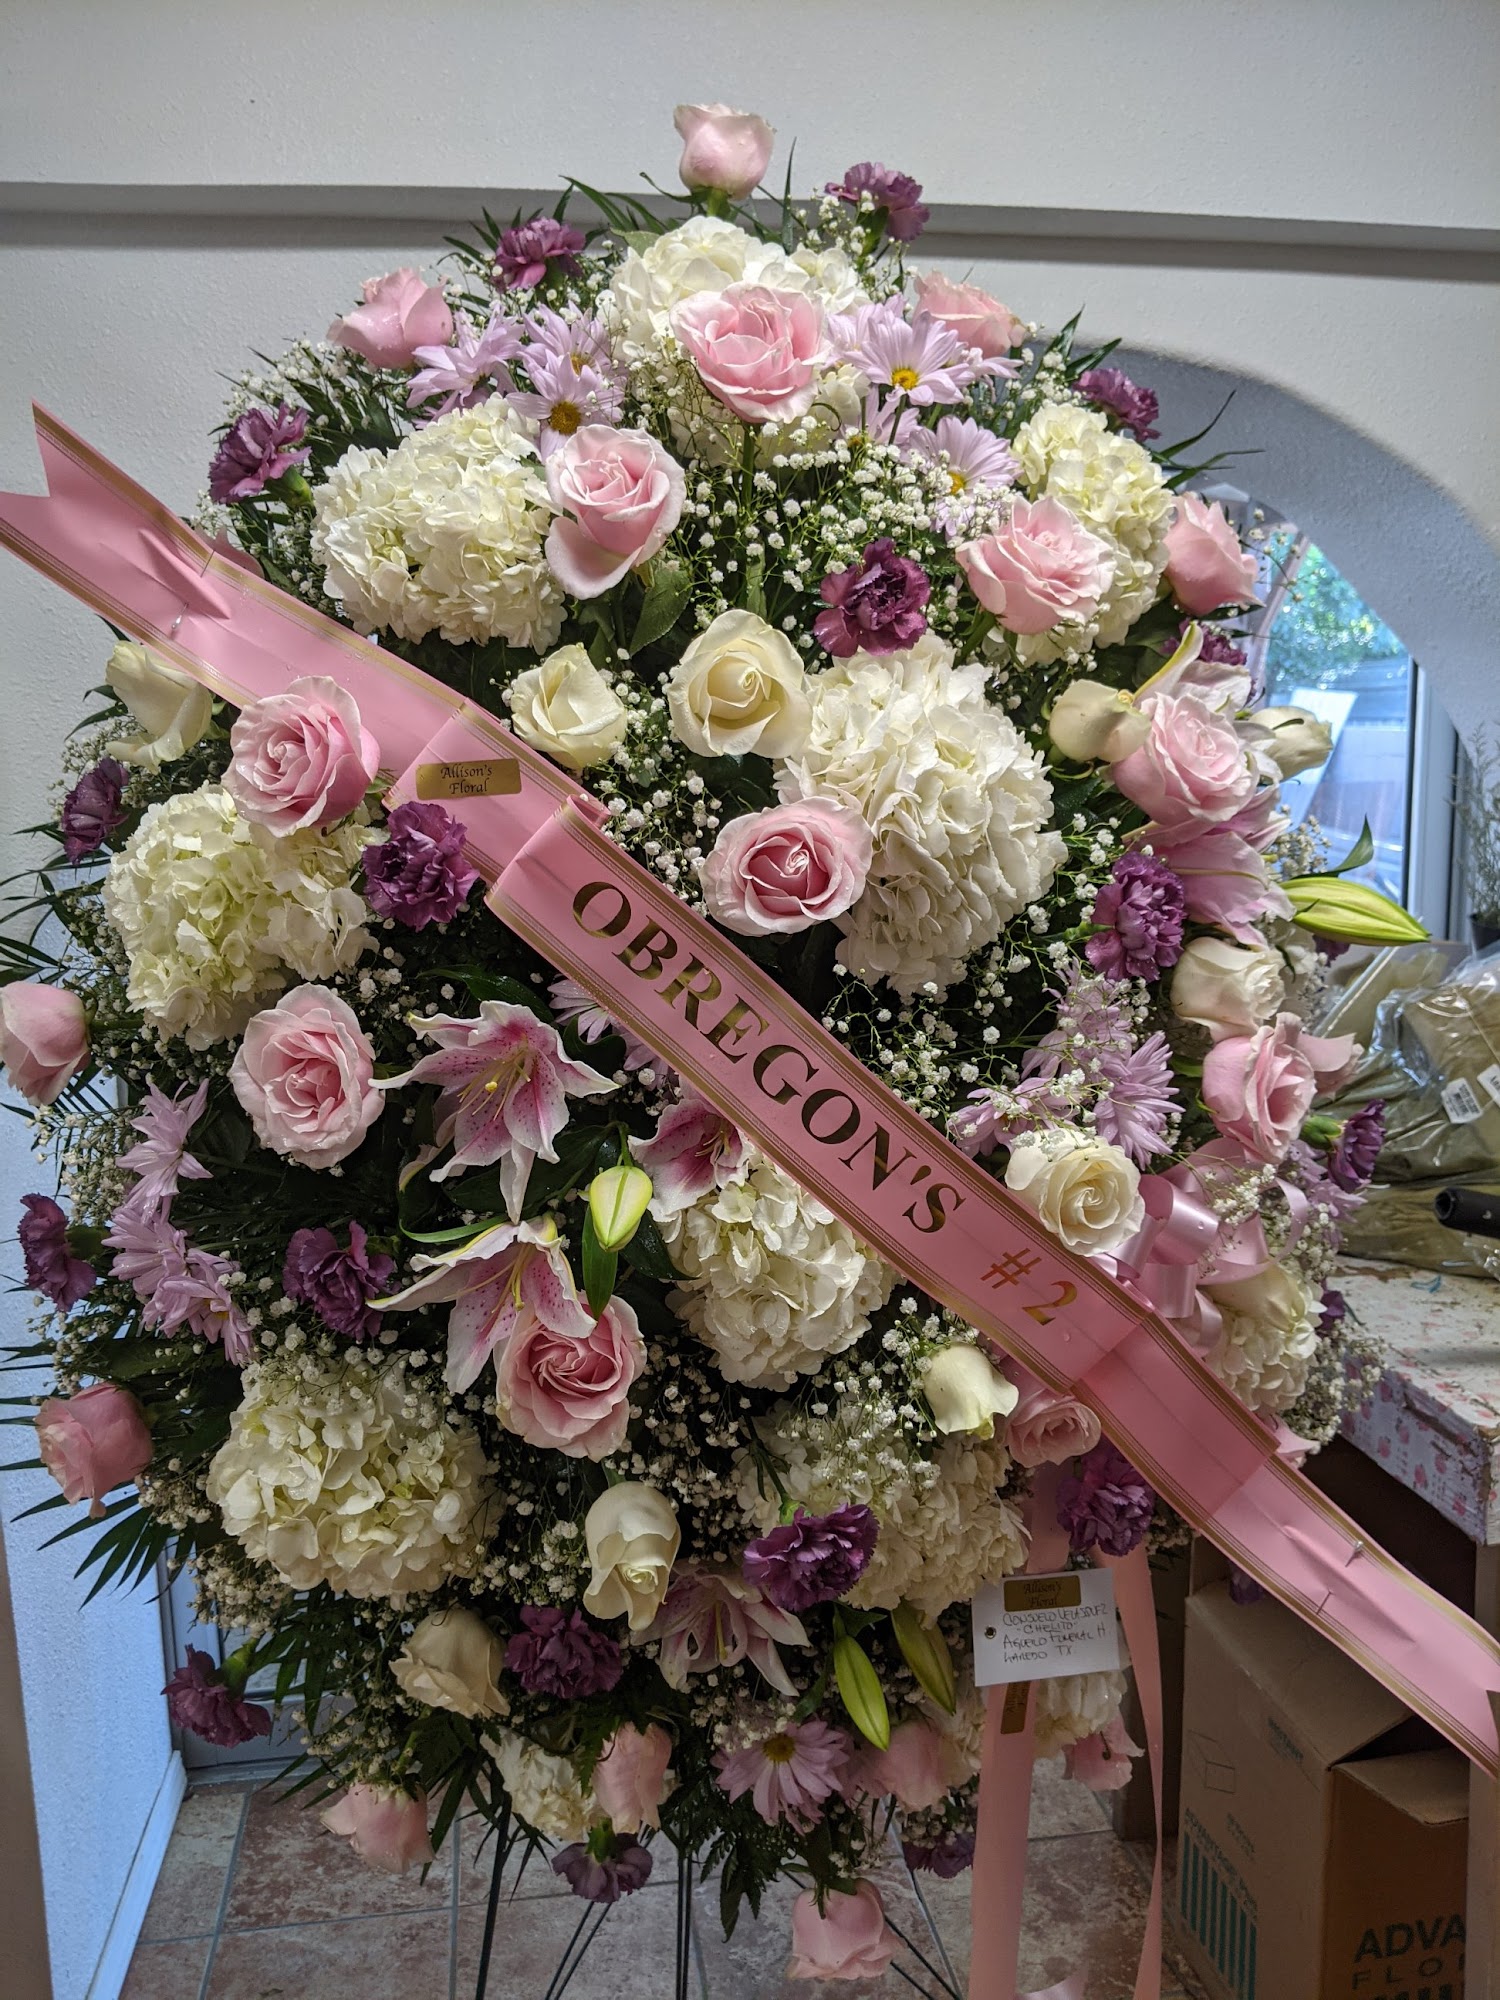 Allison's Floral & Gift Shop